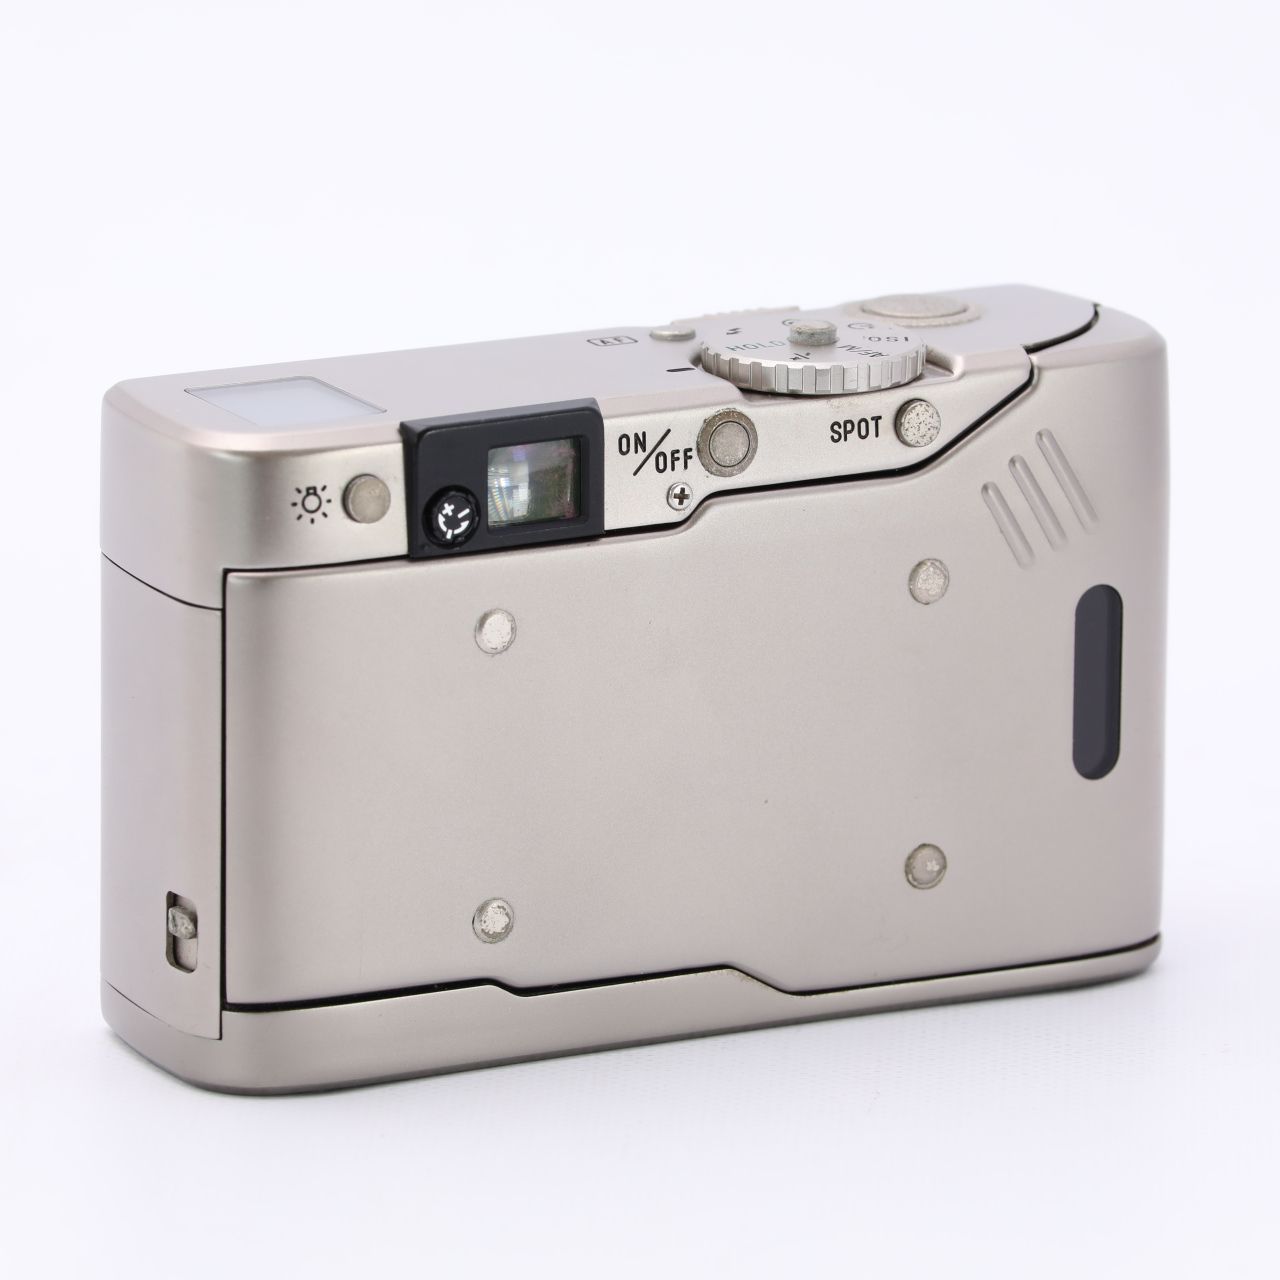 ソニー サイバーショット デジタルカメラ ホワイト ツァイス1102-S229tご購入お待ちしております